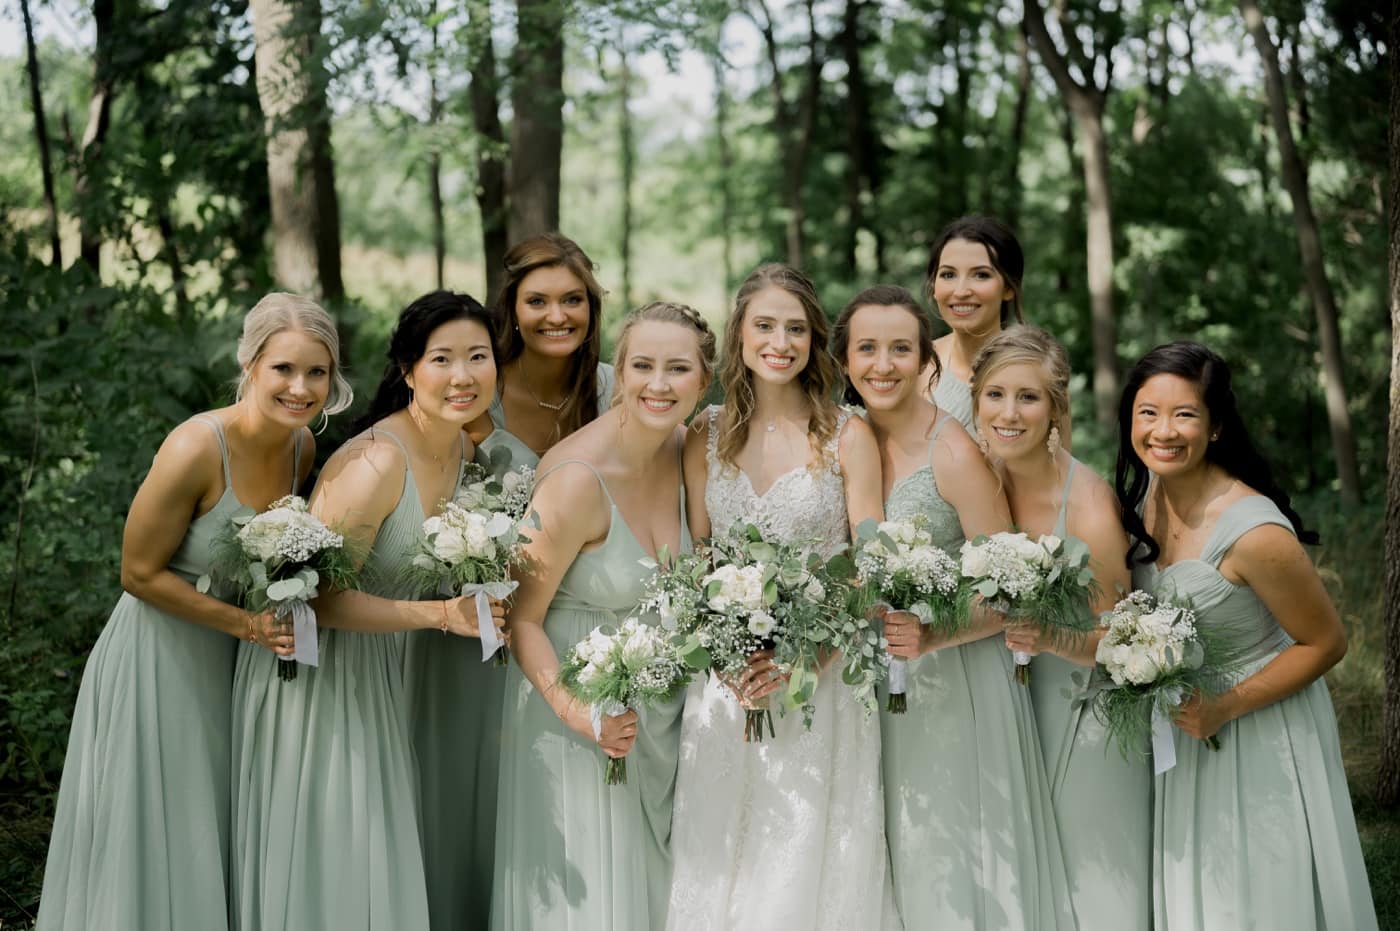 30 Bride with bridesmaids oak hill farm wedding apple river IL